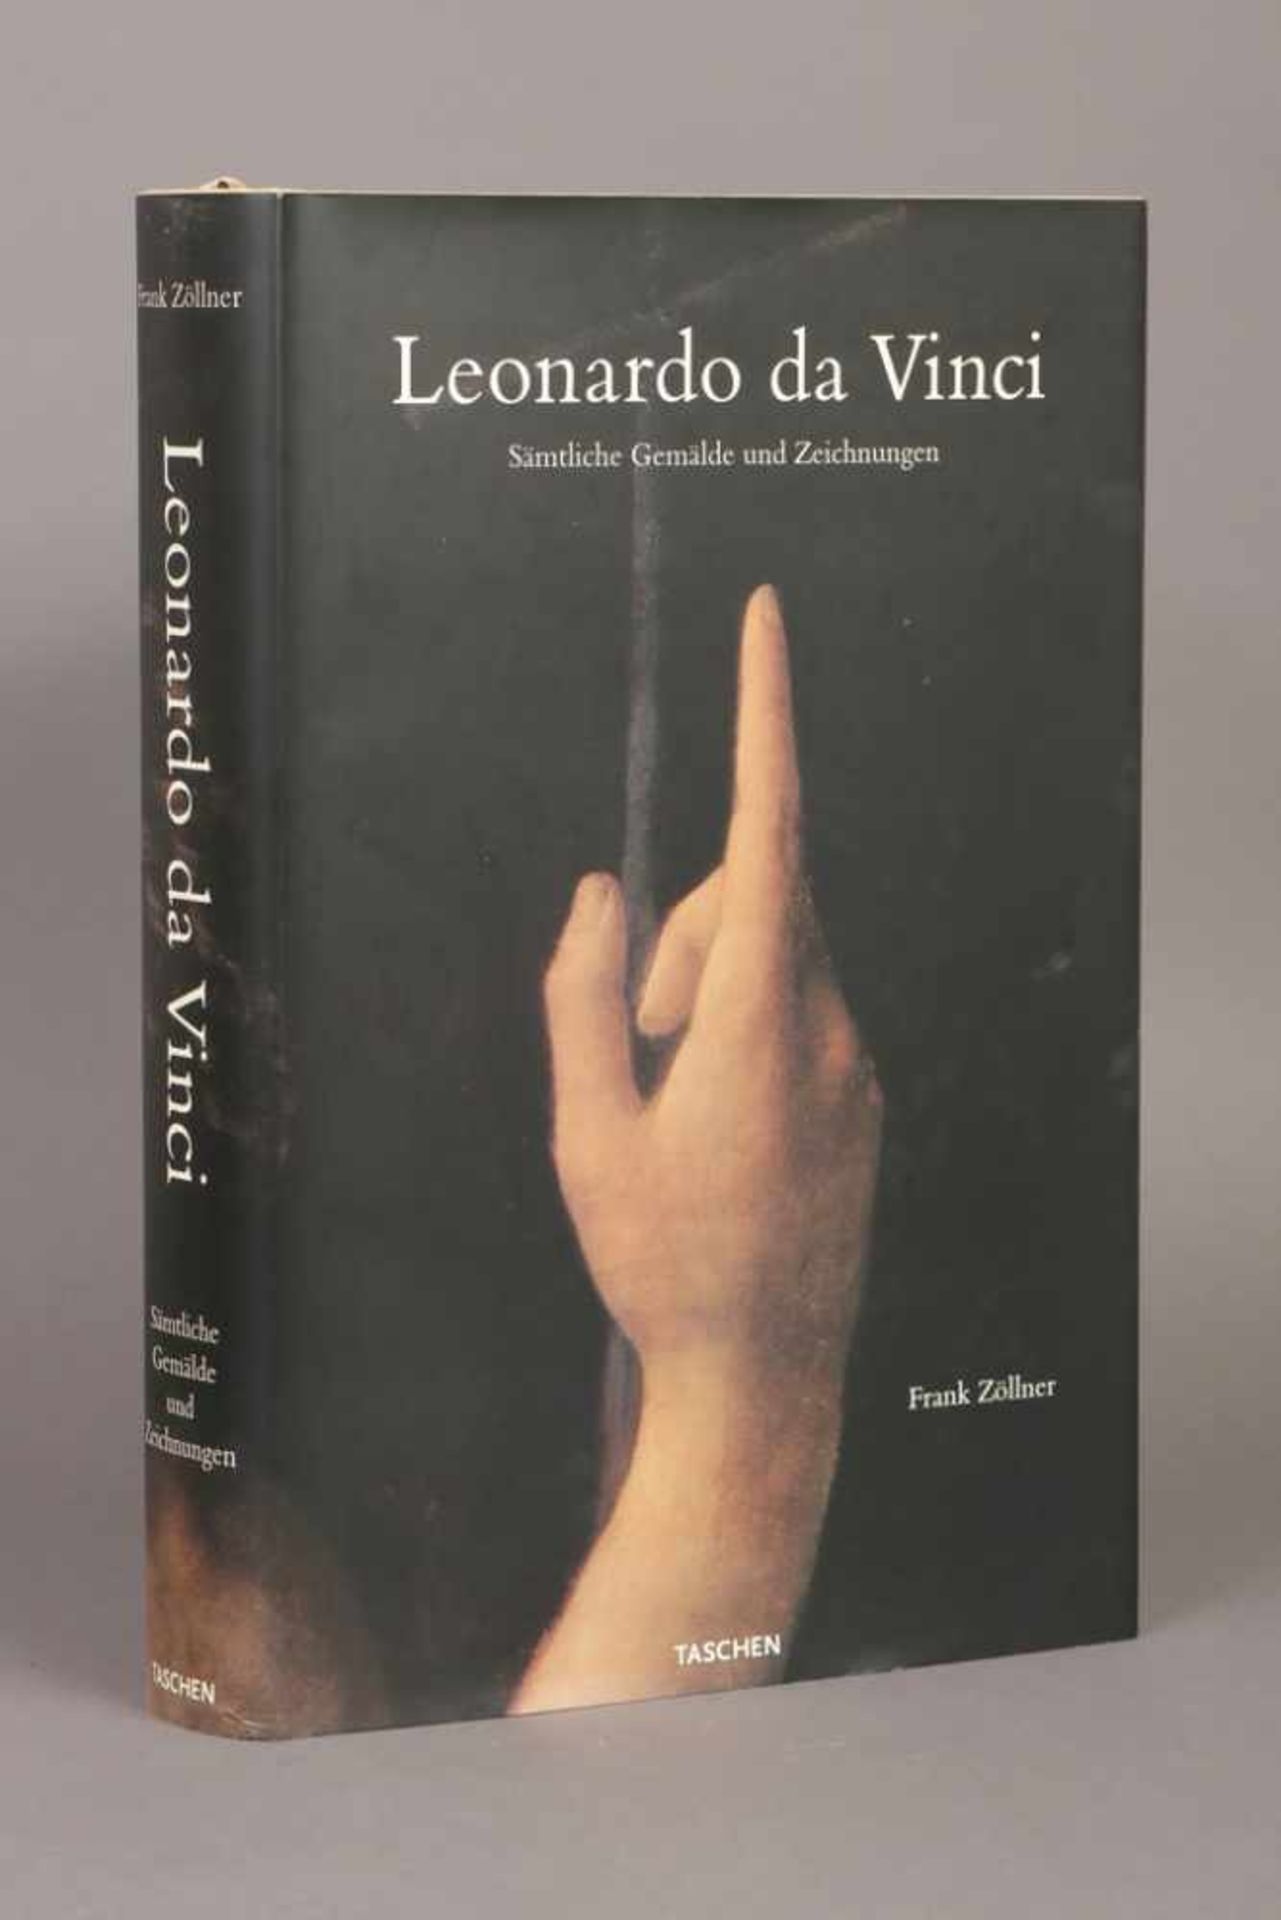 Buch ¨Leonardo Da Vinci¨ Frank Zöllner, Verlag Taschen, Sämtliche Gemälde und Zeichnungen,